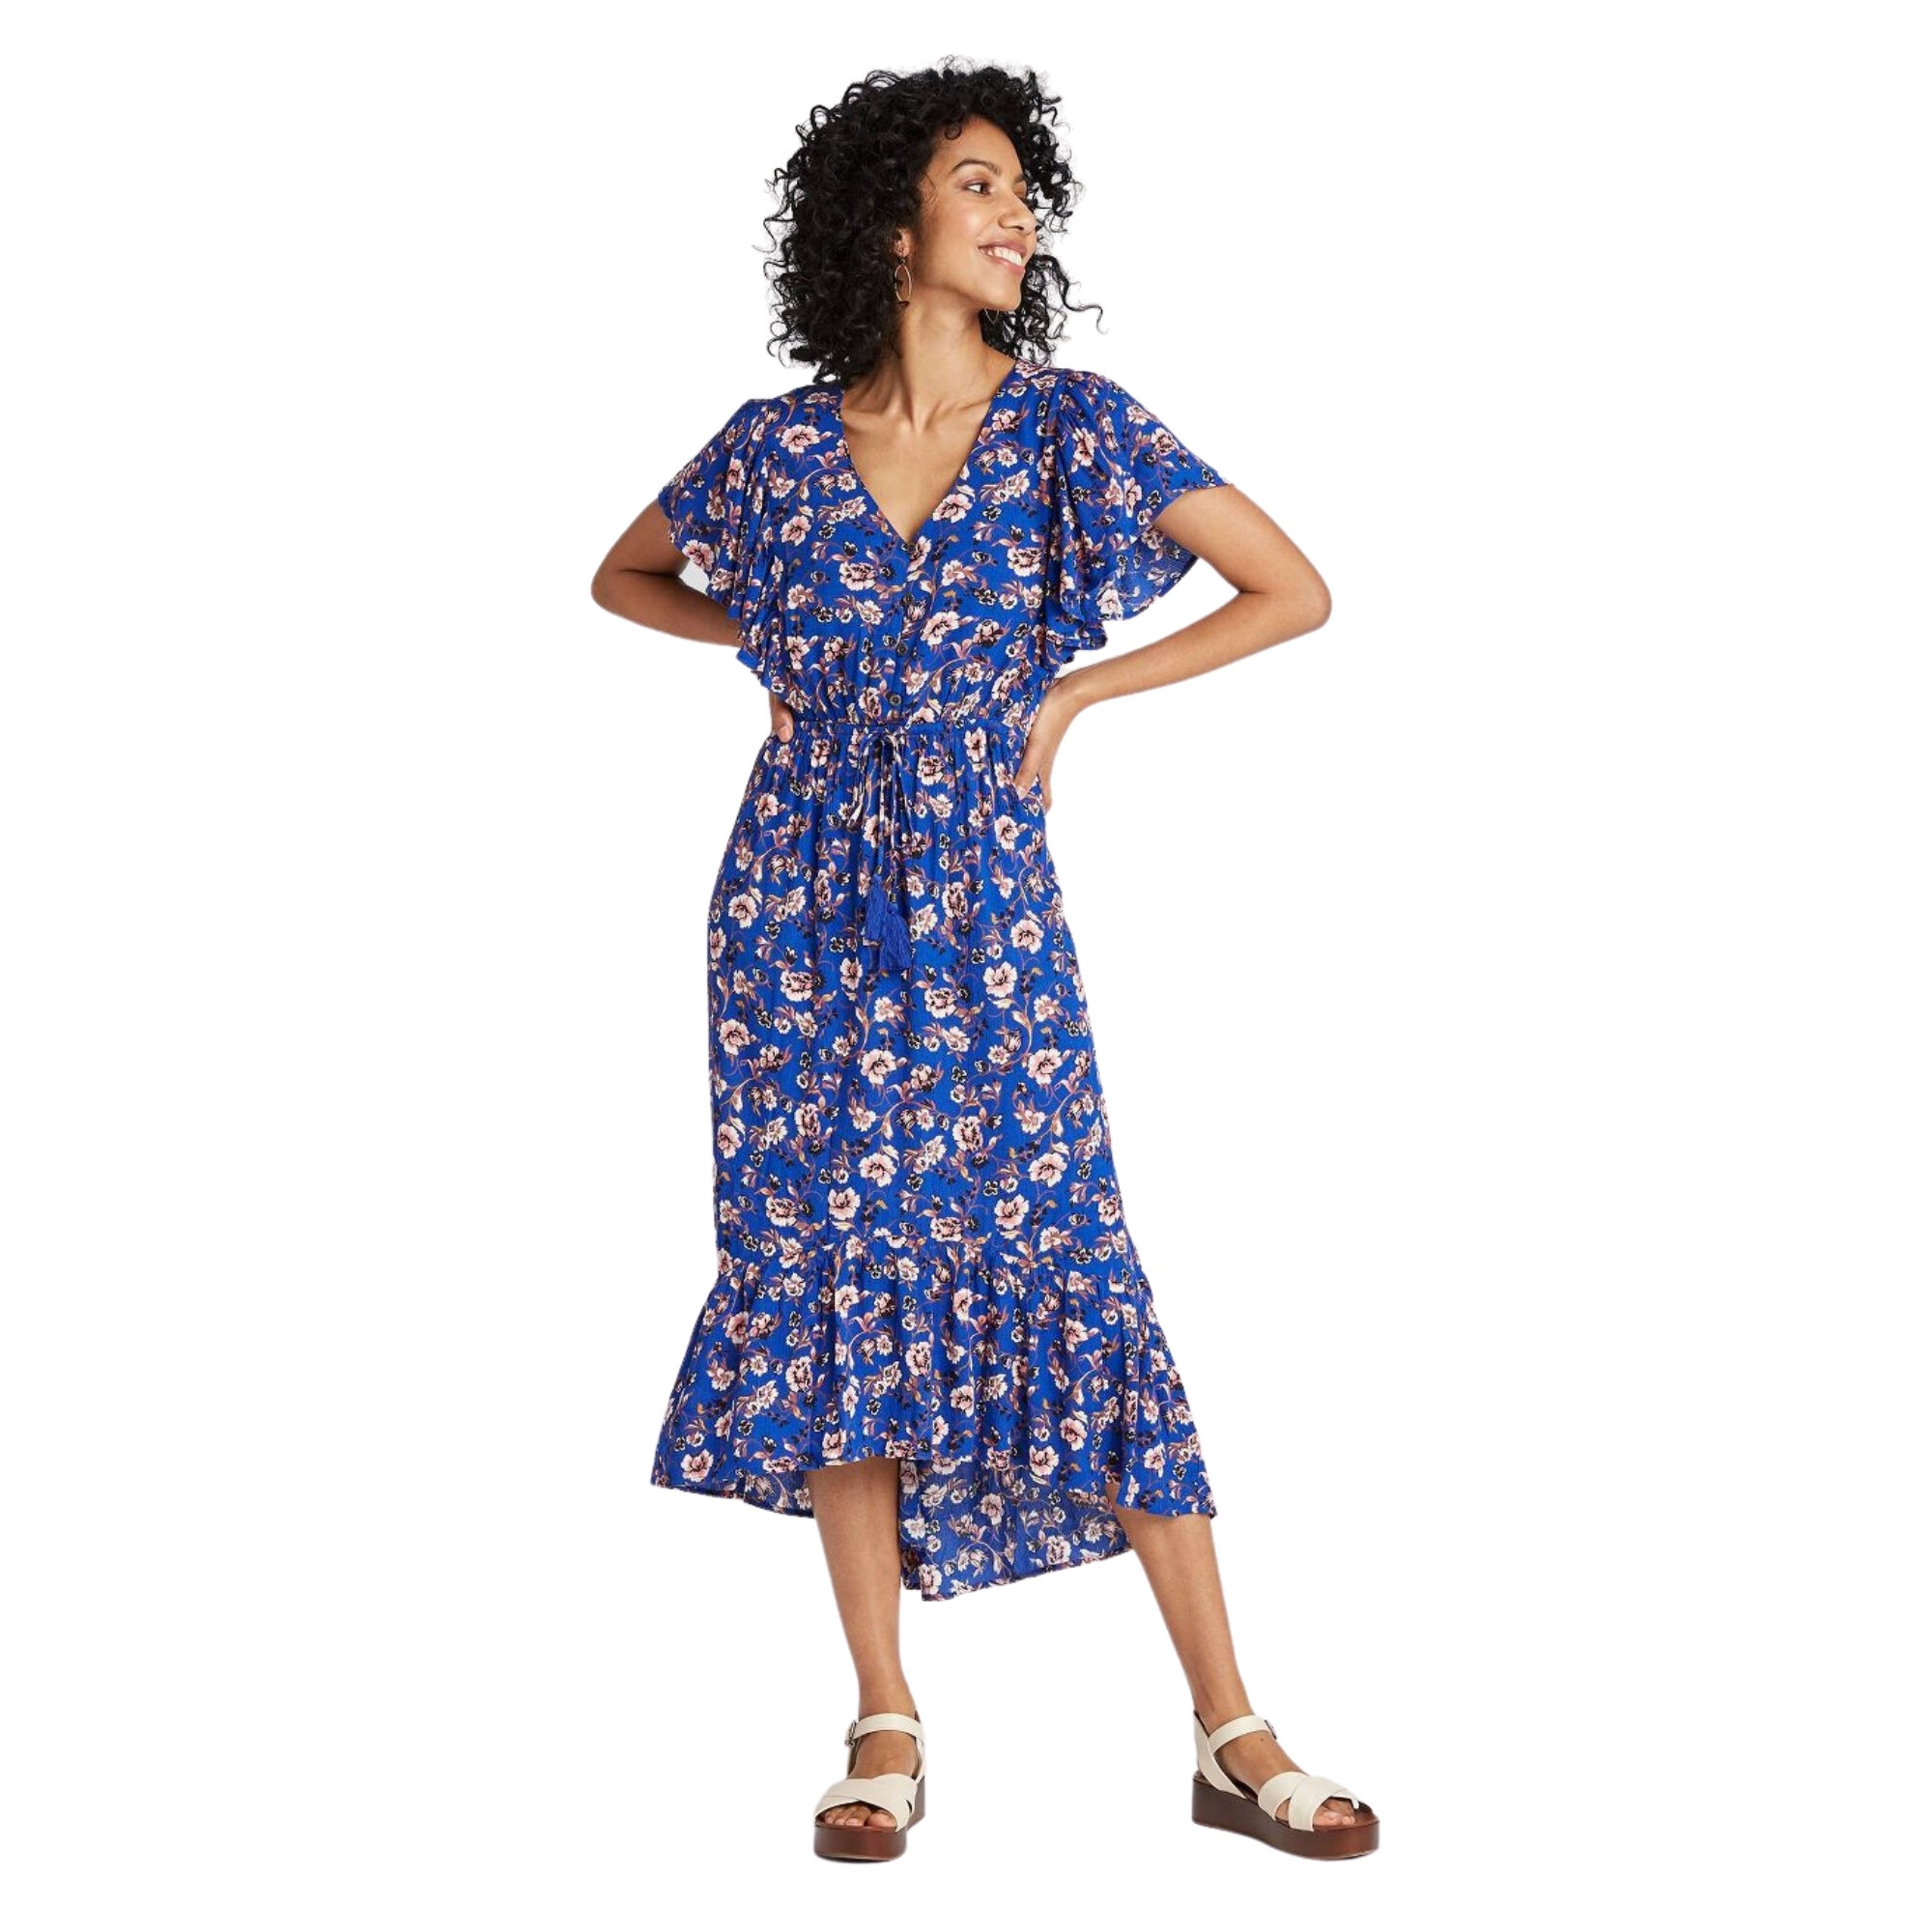 Floral Print Flutter Sleeve Dress, Target, $34.99 (machine wash)